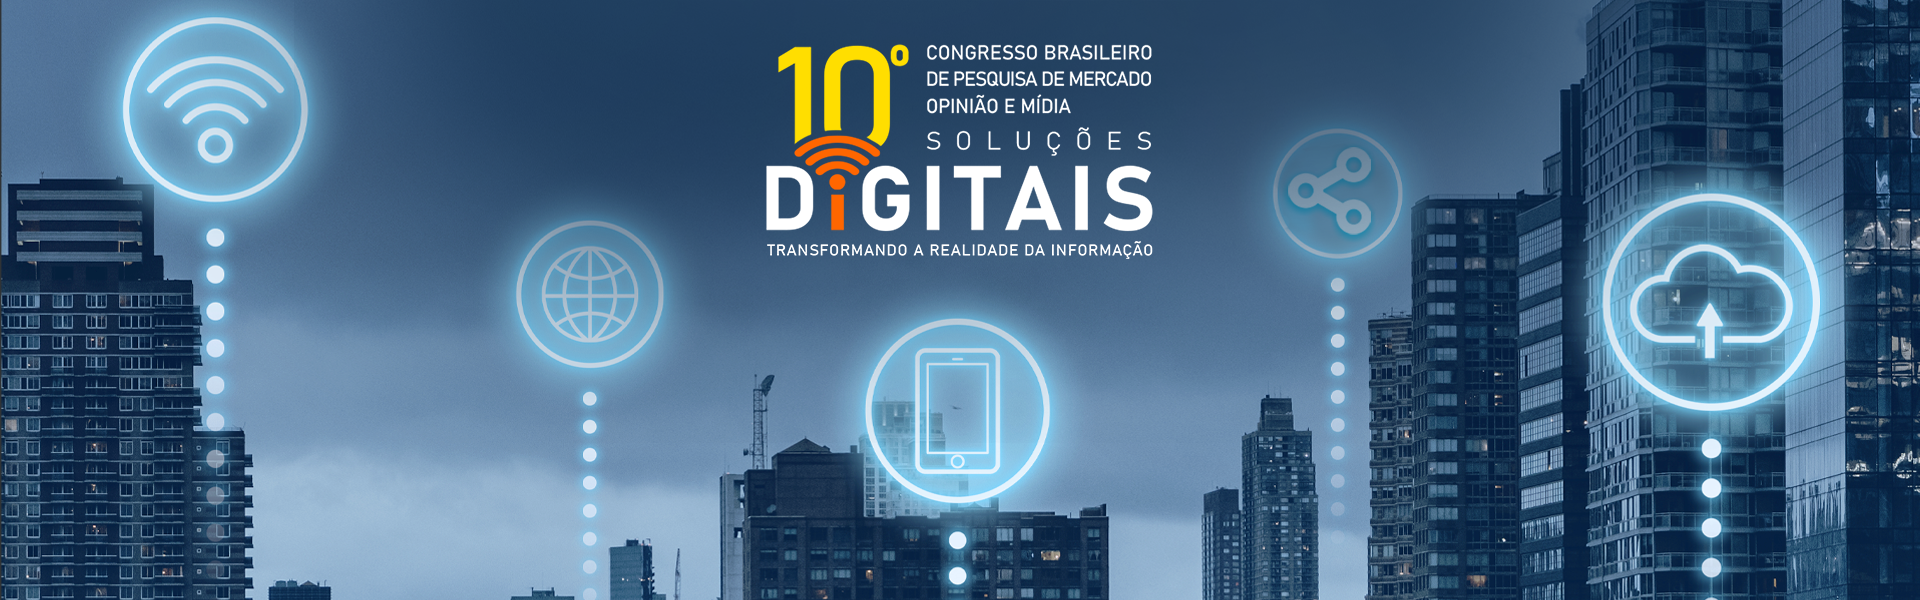 10º Congresso Brasileiro de Pesquisa